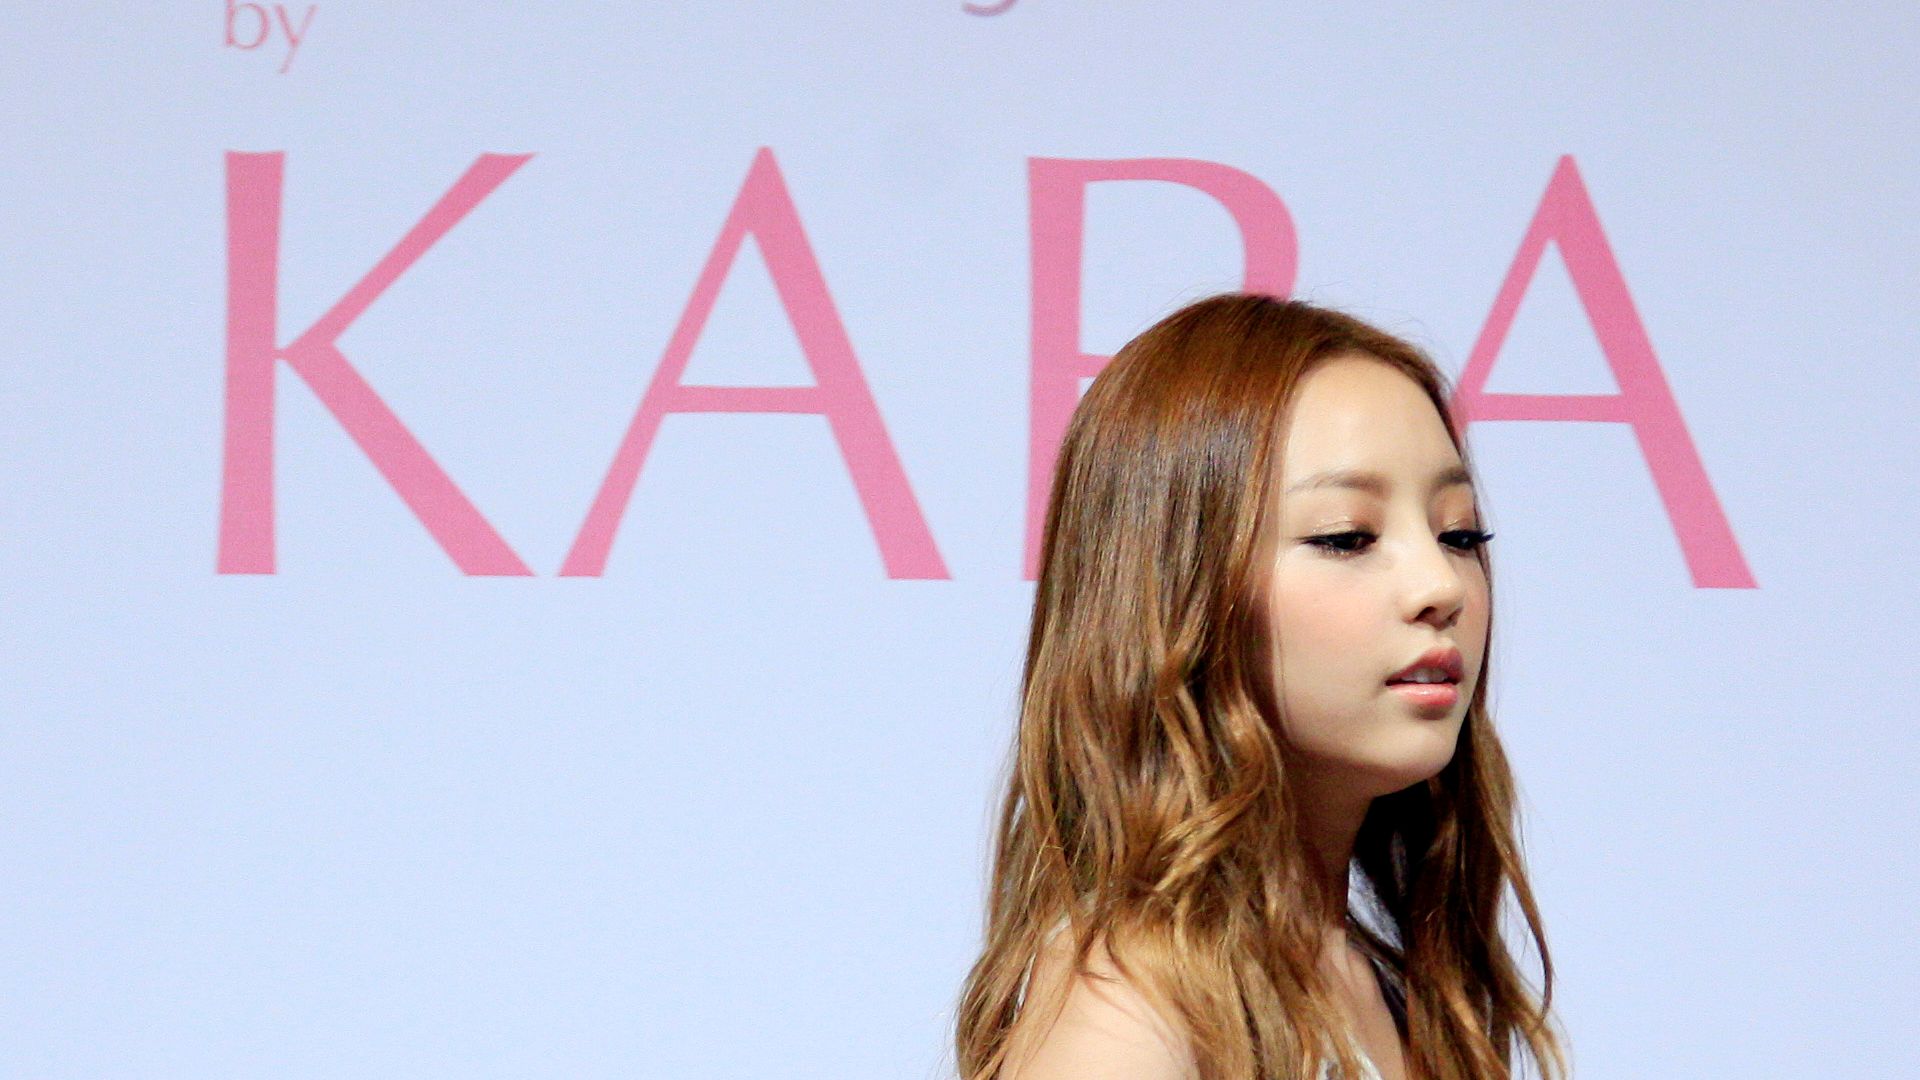 La joven estrella del K-Pop Goo Ha-ra dejó una nota "pesimista" antes de morir